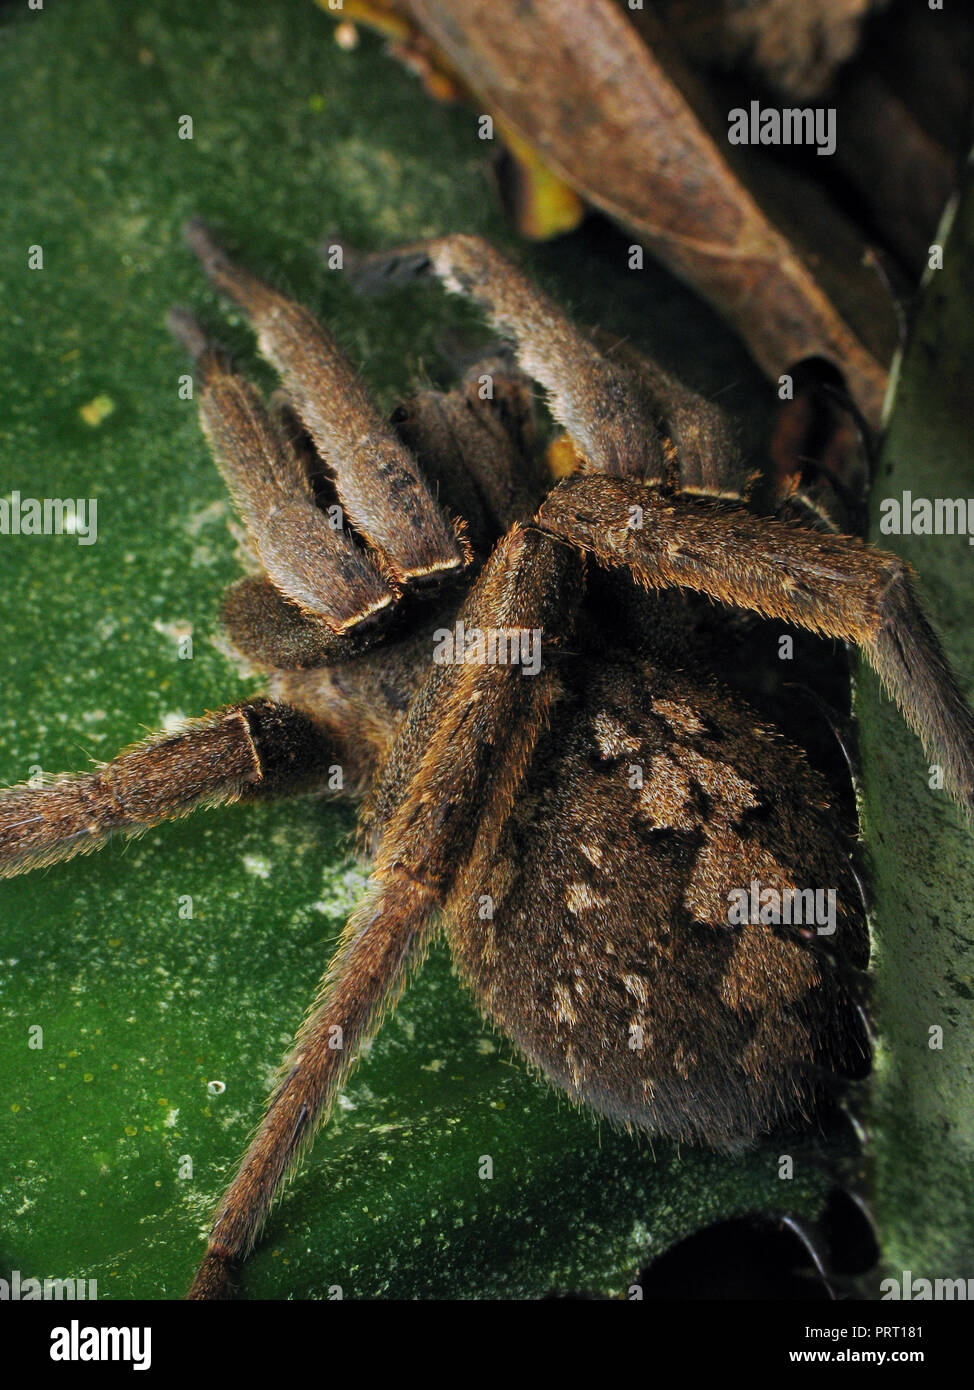 Phoneutria nigriventer araignée venimeuse (errance brésilien armadeira, araignée) haut afficher les modèles macro montrant l'abdomen. Depuis le sud-est du Brésil. Banque D'Images